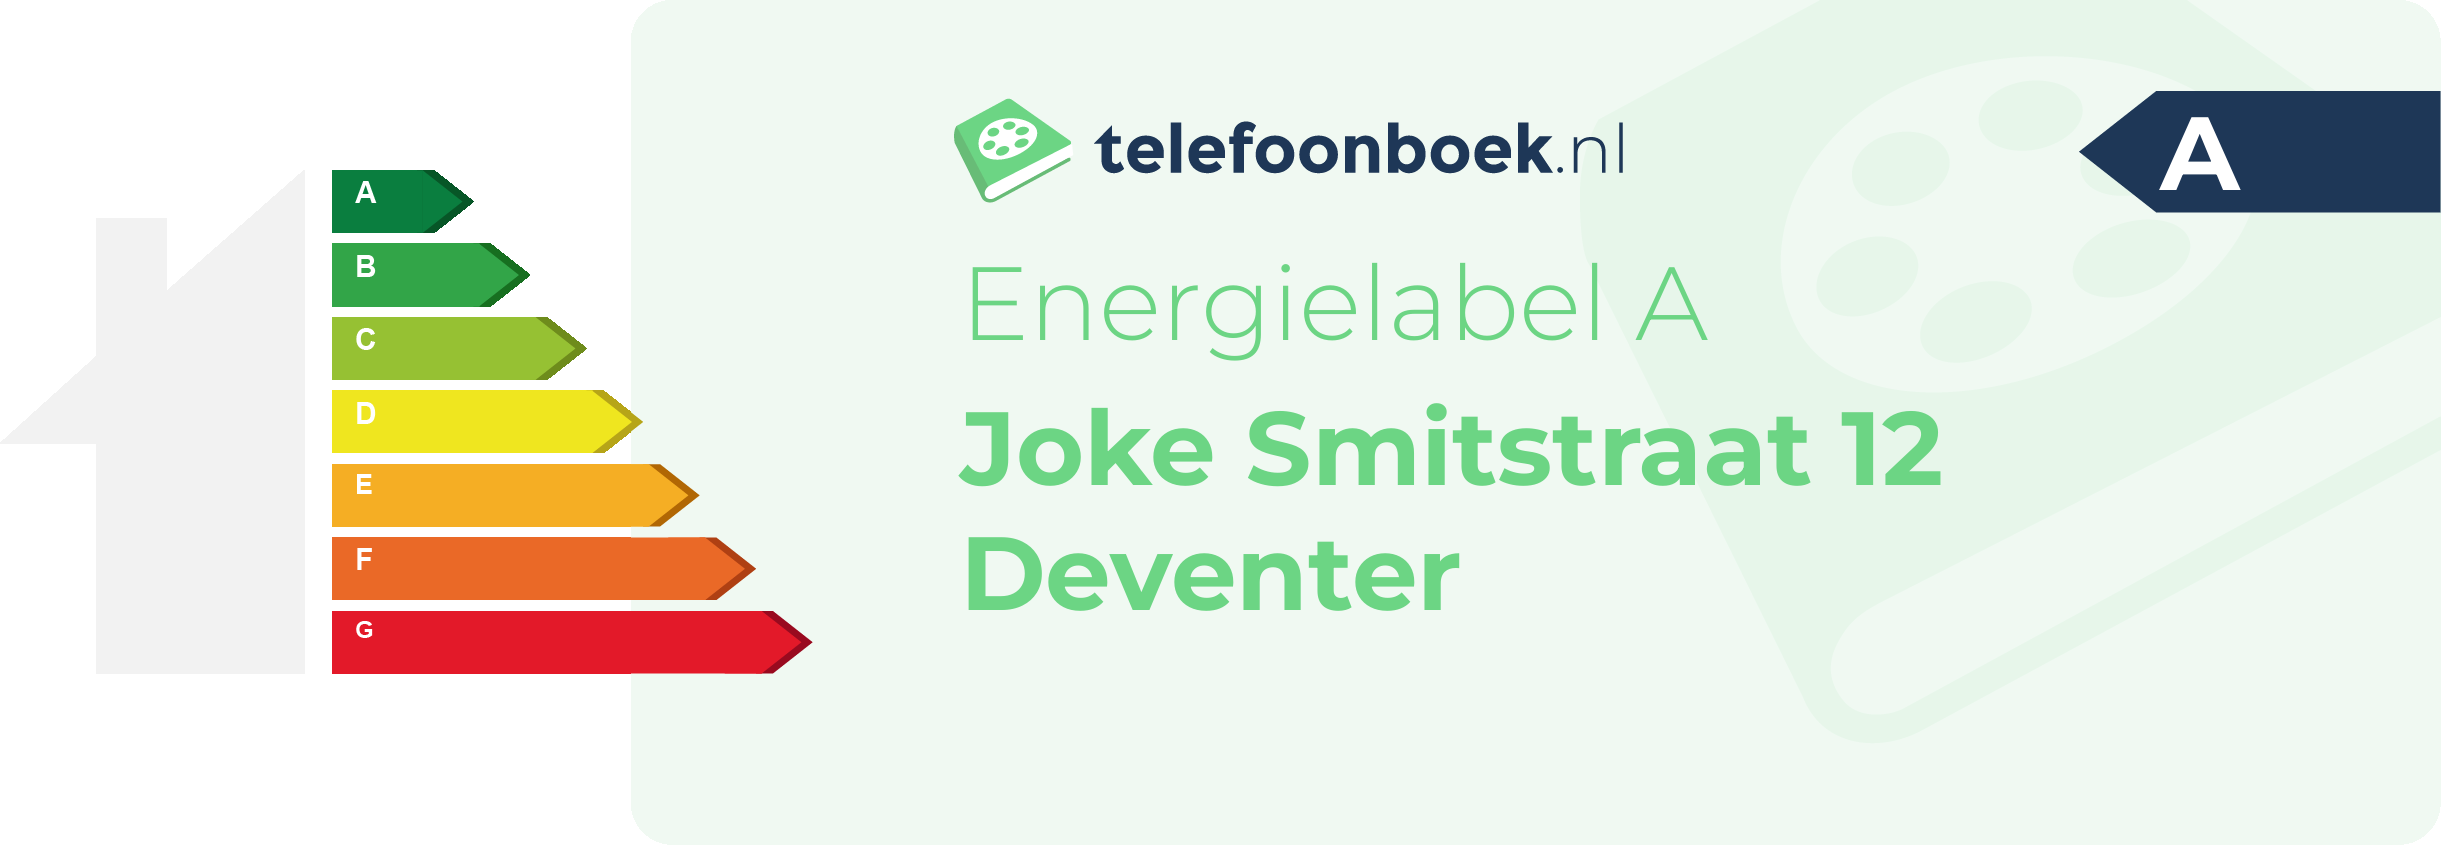 Energielabel Joke Smitstraat 12 Deventer